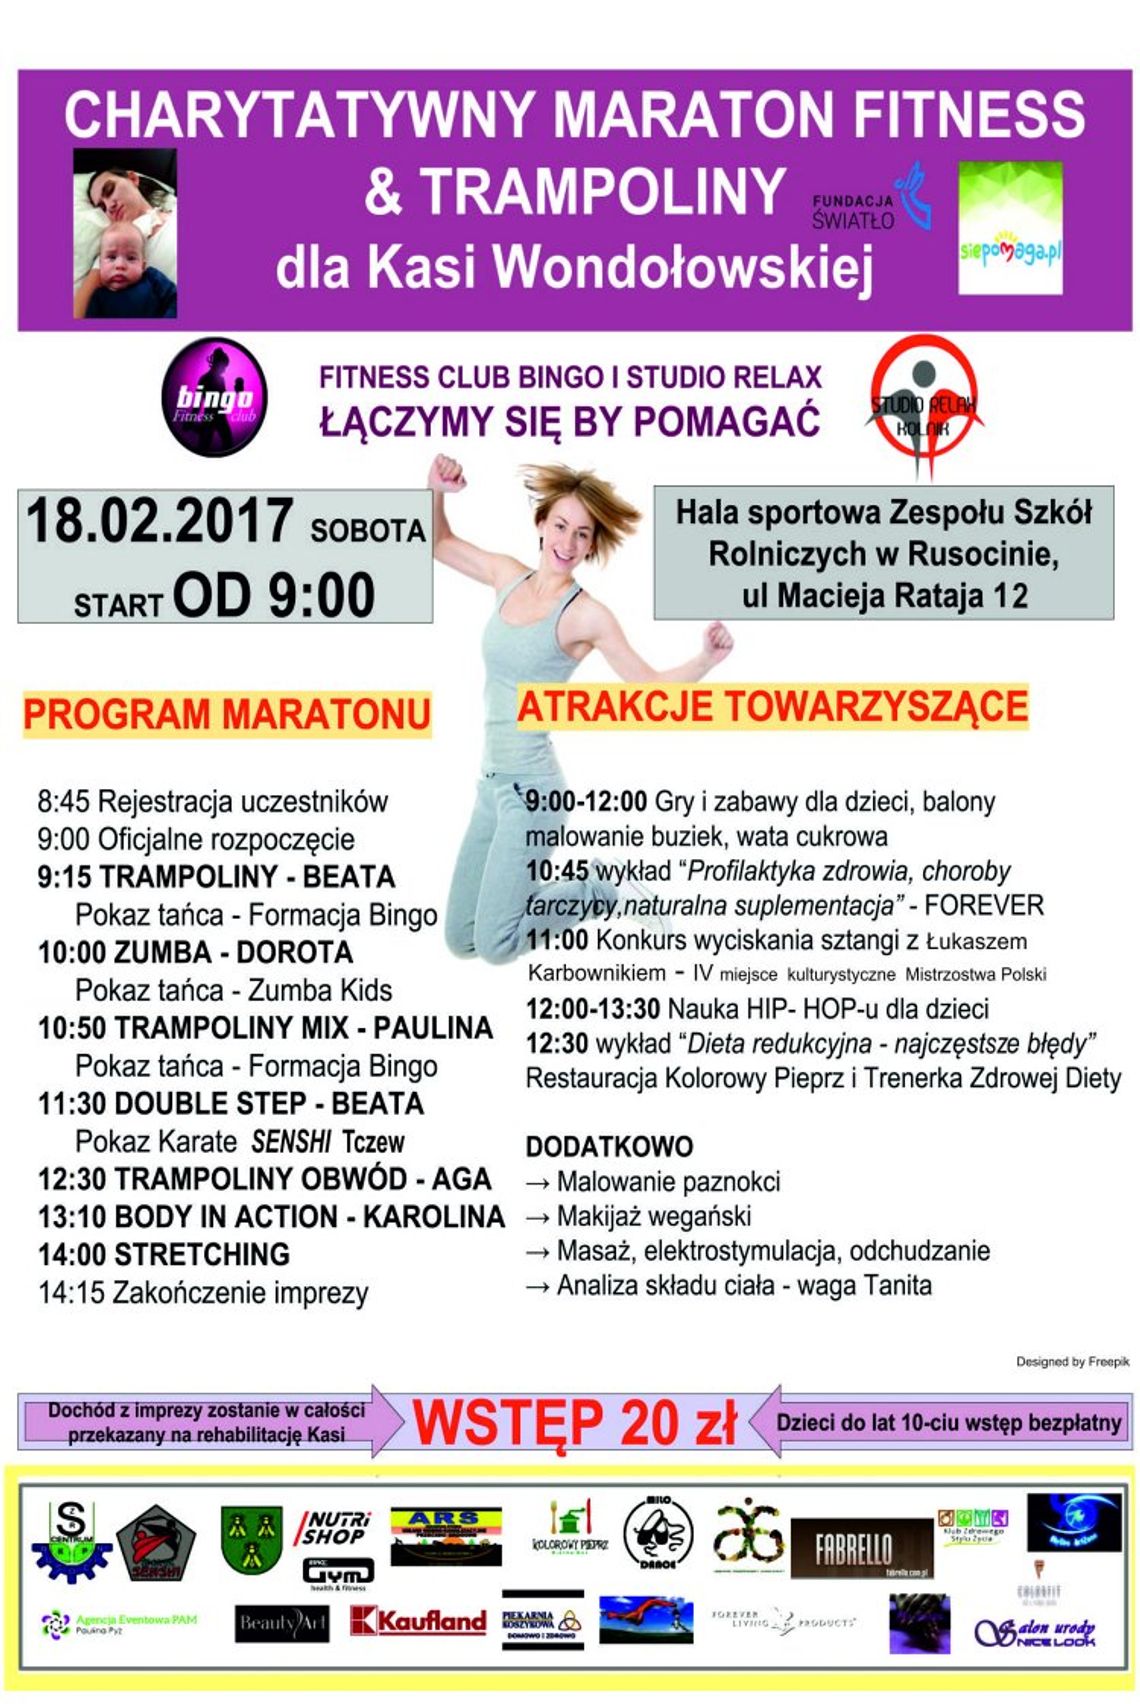 Charytatywny Maraton Fitness dla Kasi Wondołowskiej